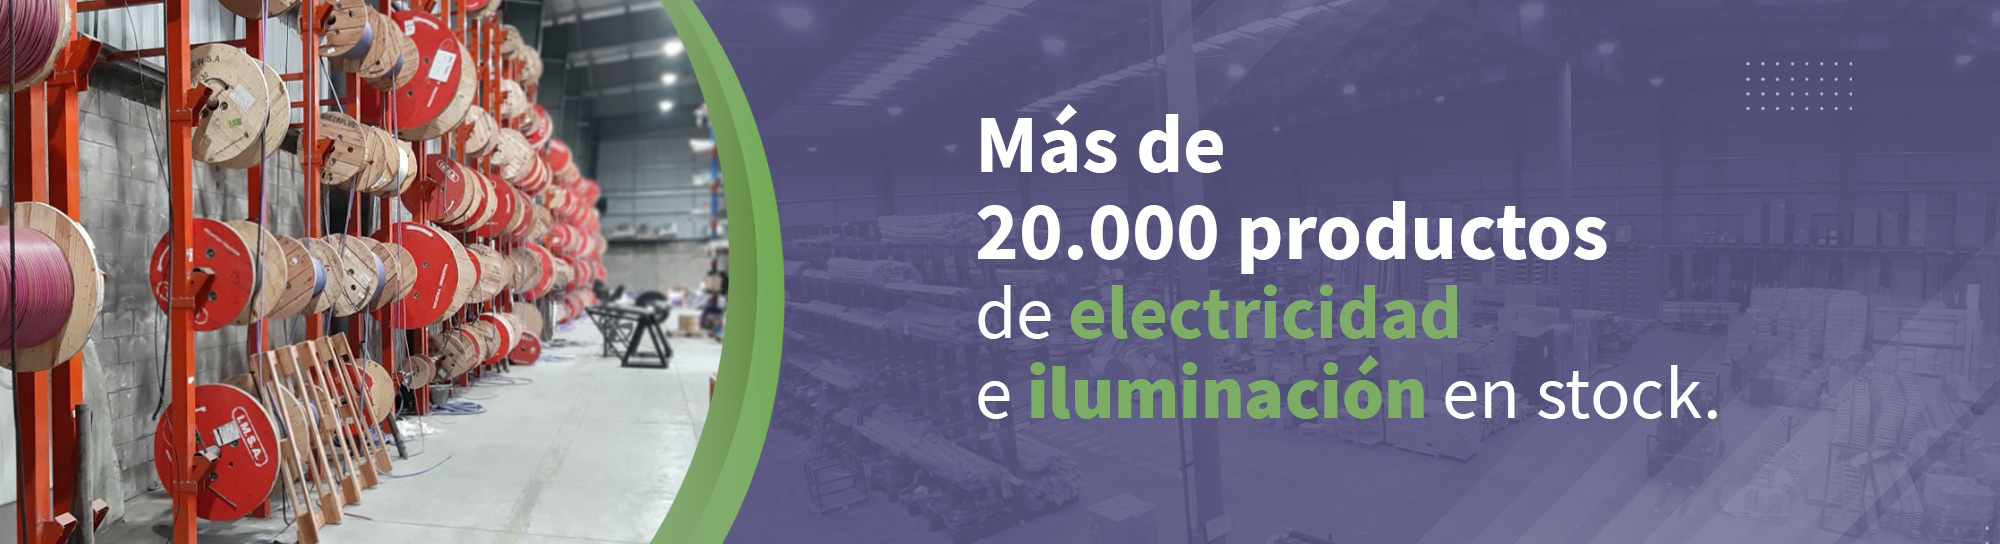 Más de veinte mil productos de iluminacion y electricidad en stock